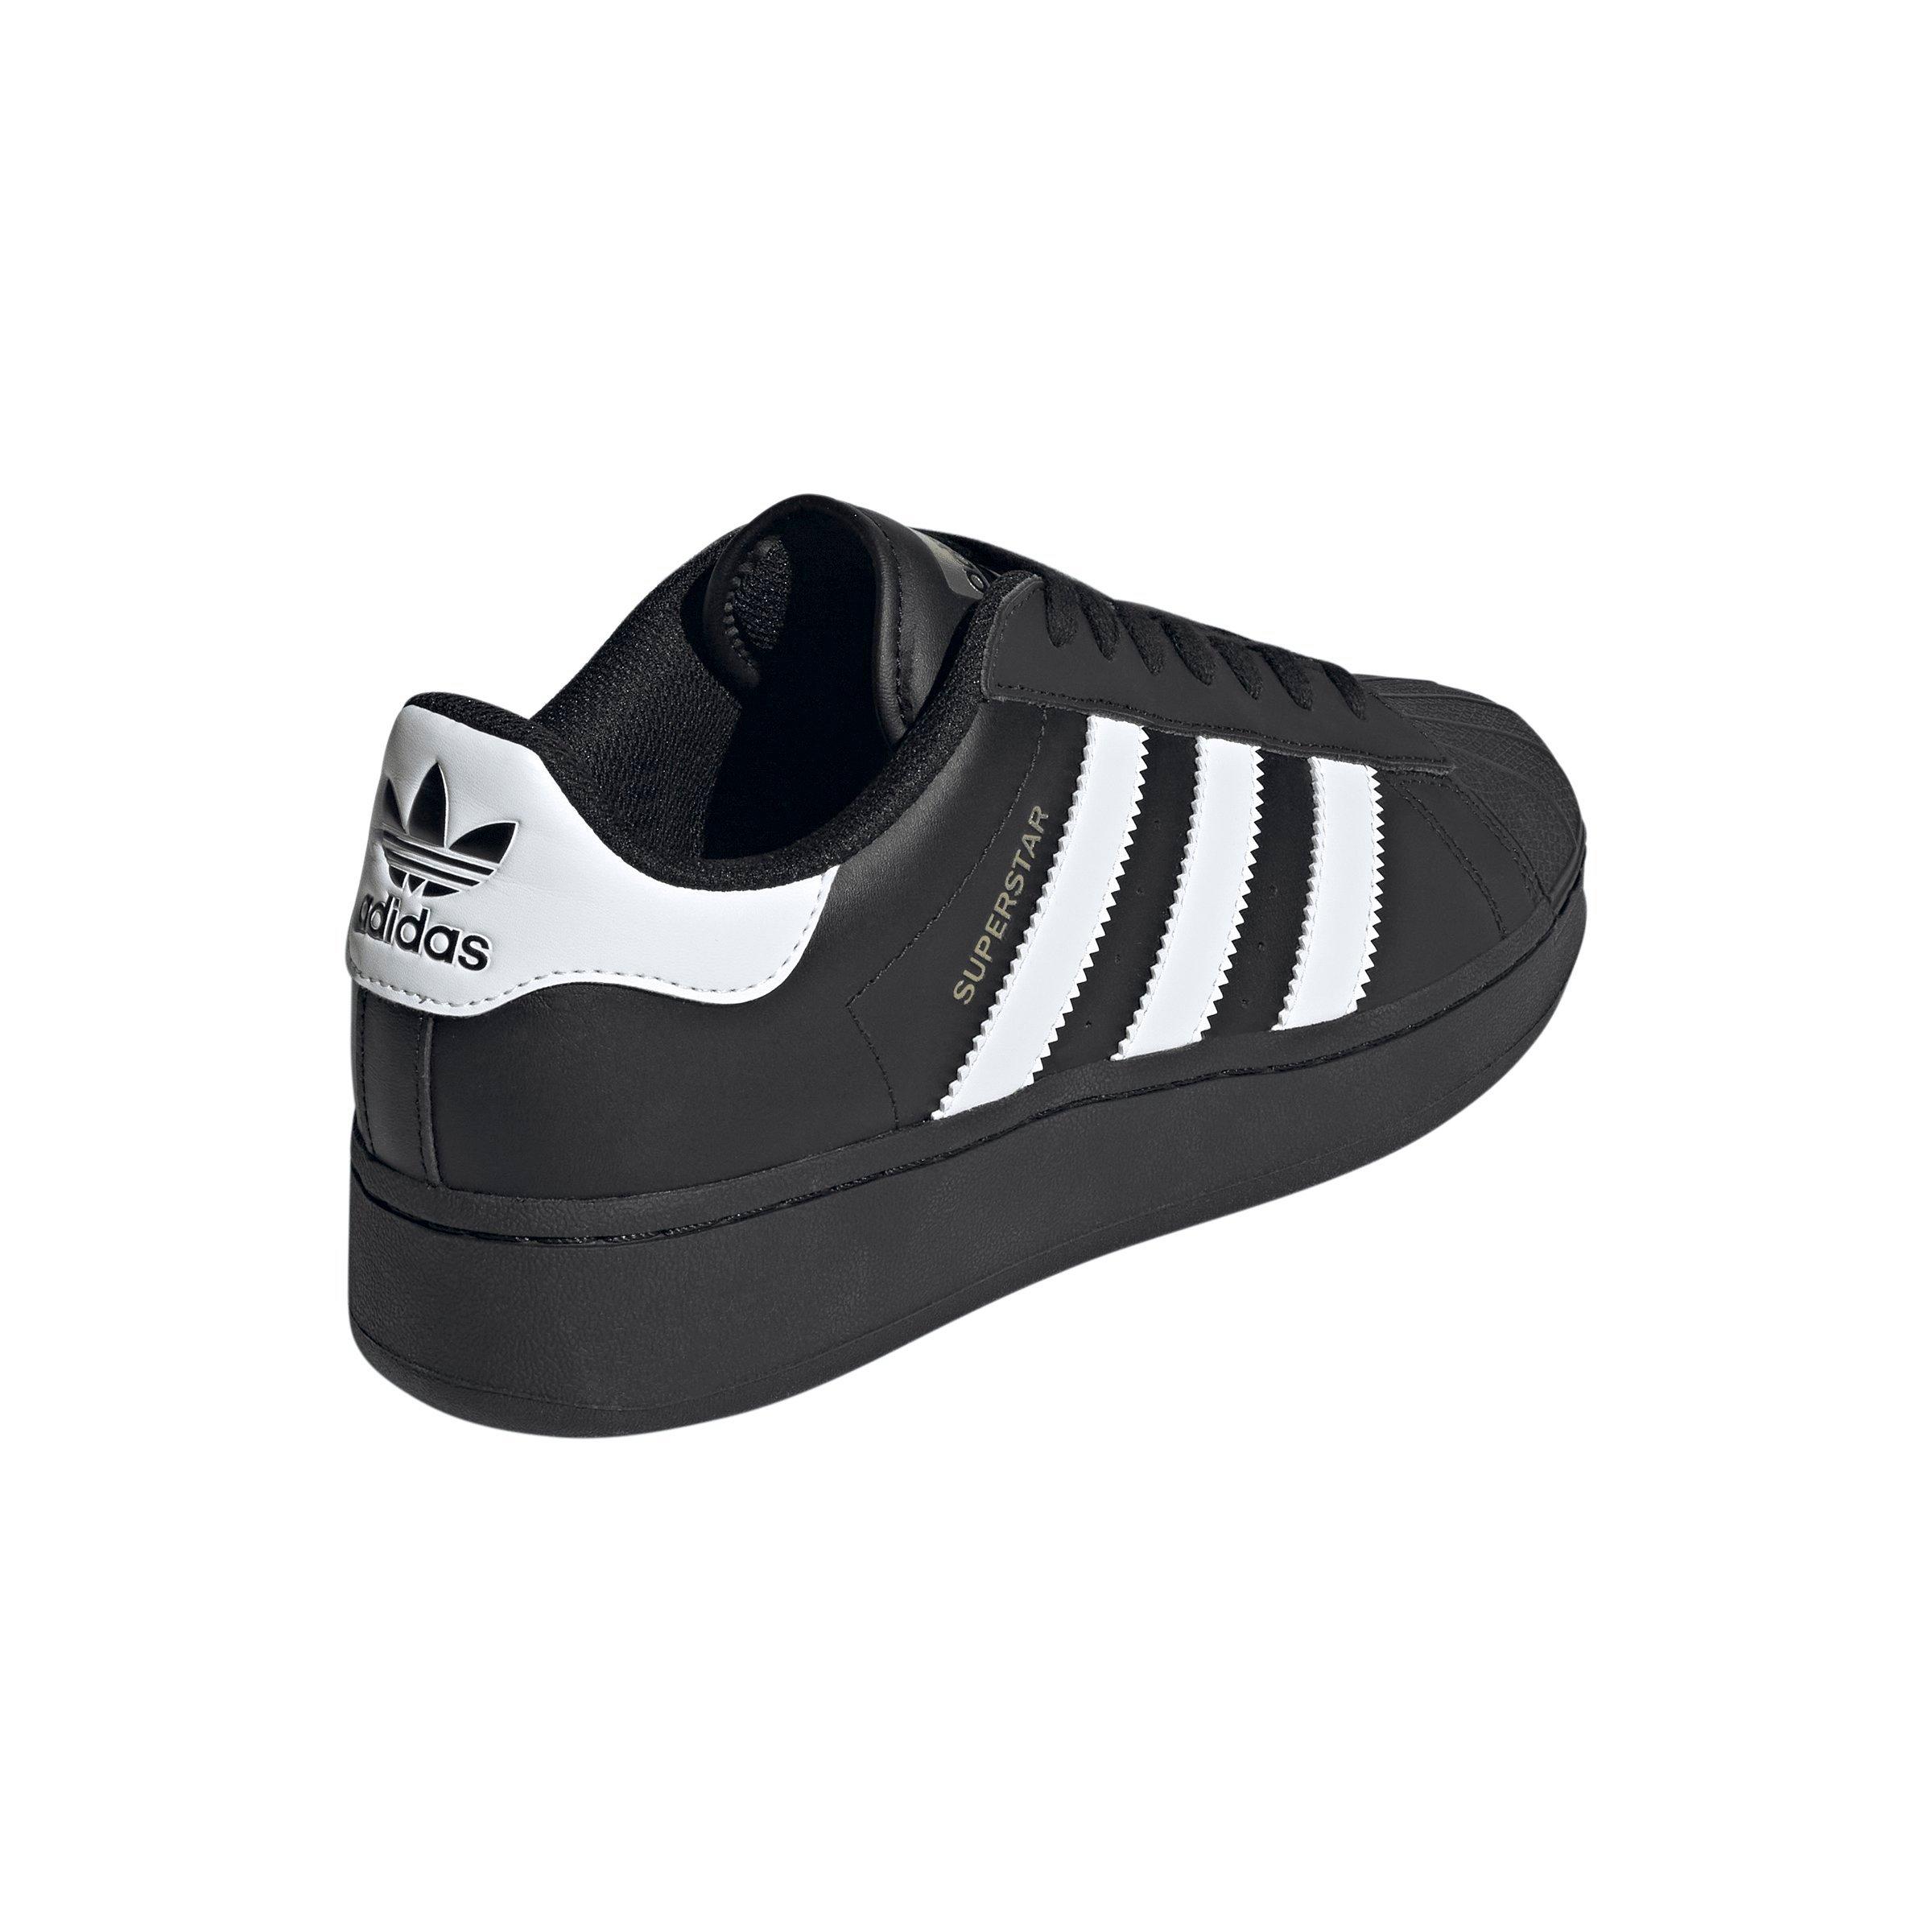 Men's shoes adidas Originals Superstar XLG Ftw White/ Core Black